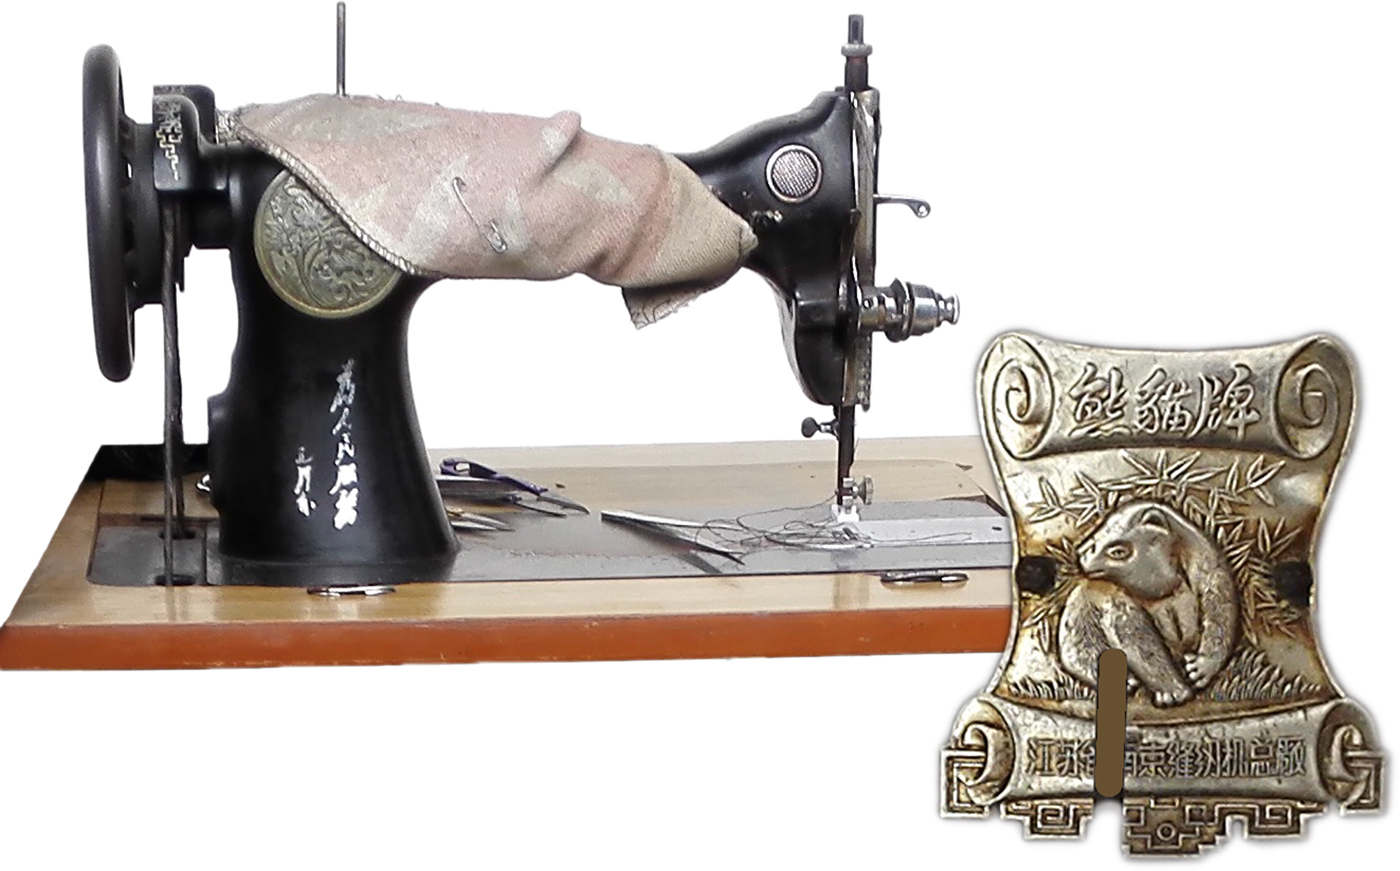 singer 247 sewing machine repair manual